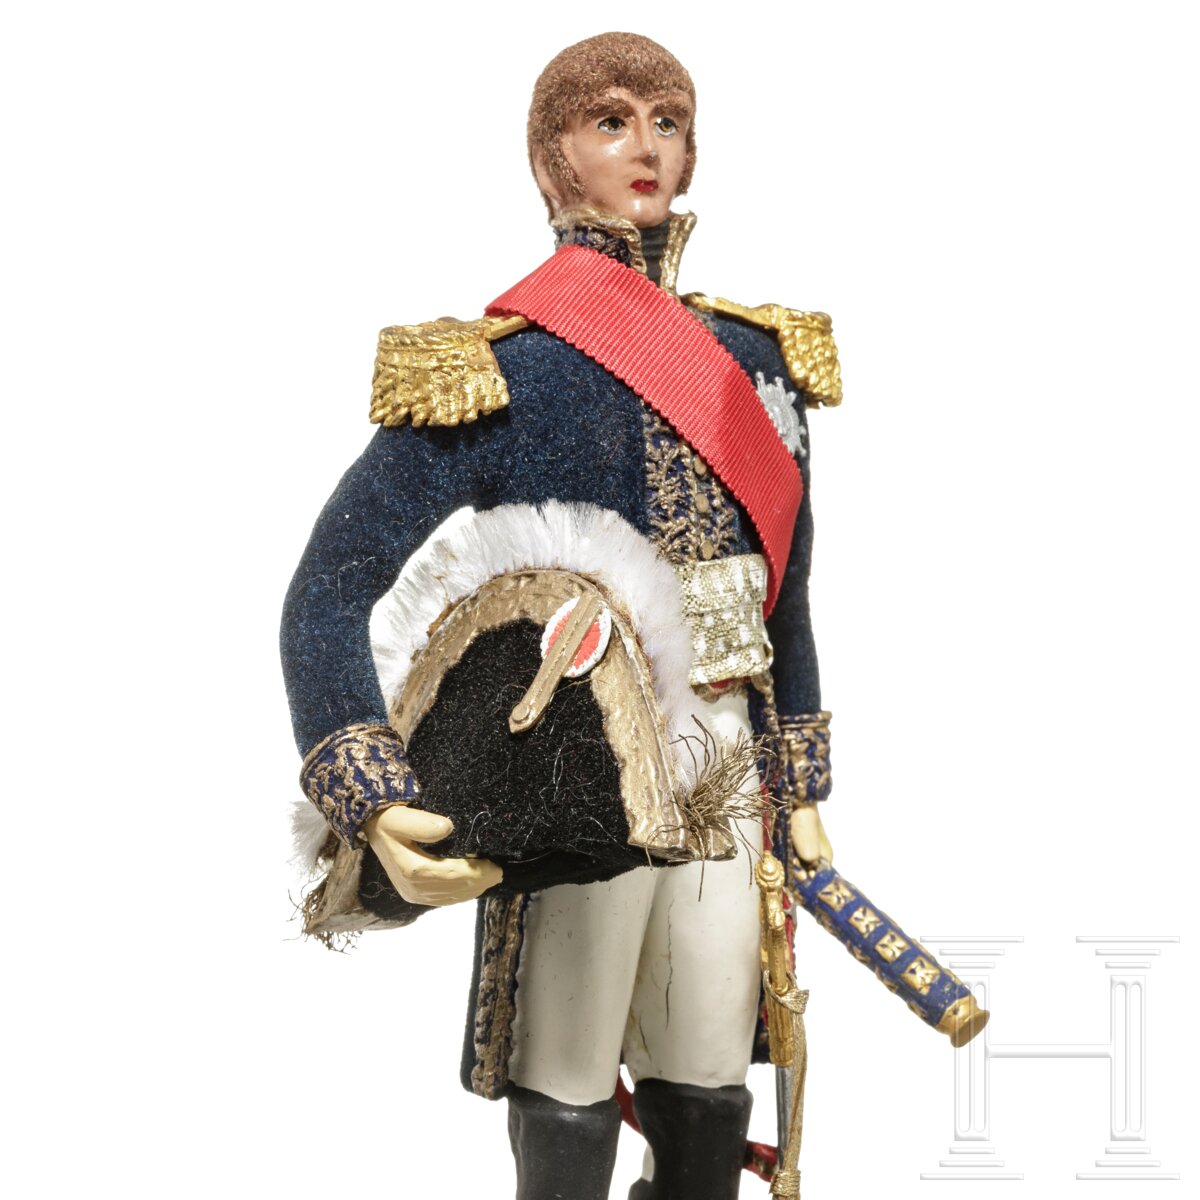 Marschall Ney um 1810 - Uniformfigur von Marcel Riffet, 20. Jhdt. - Image 6 of 6